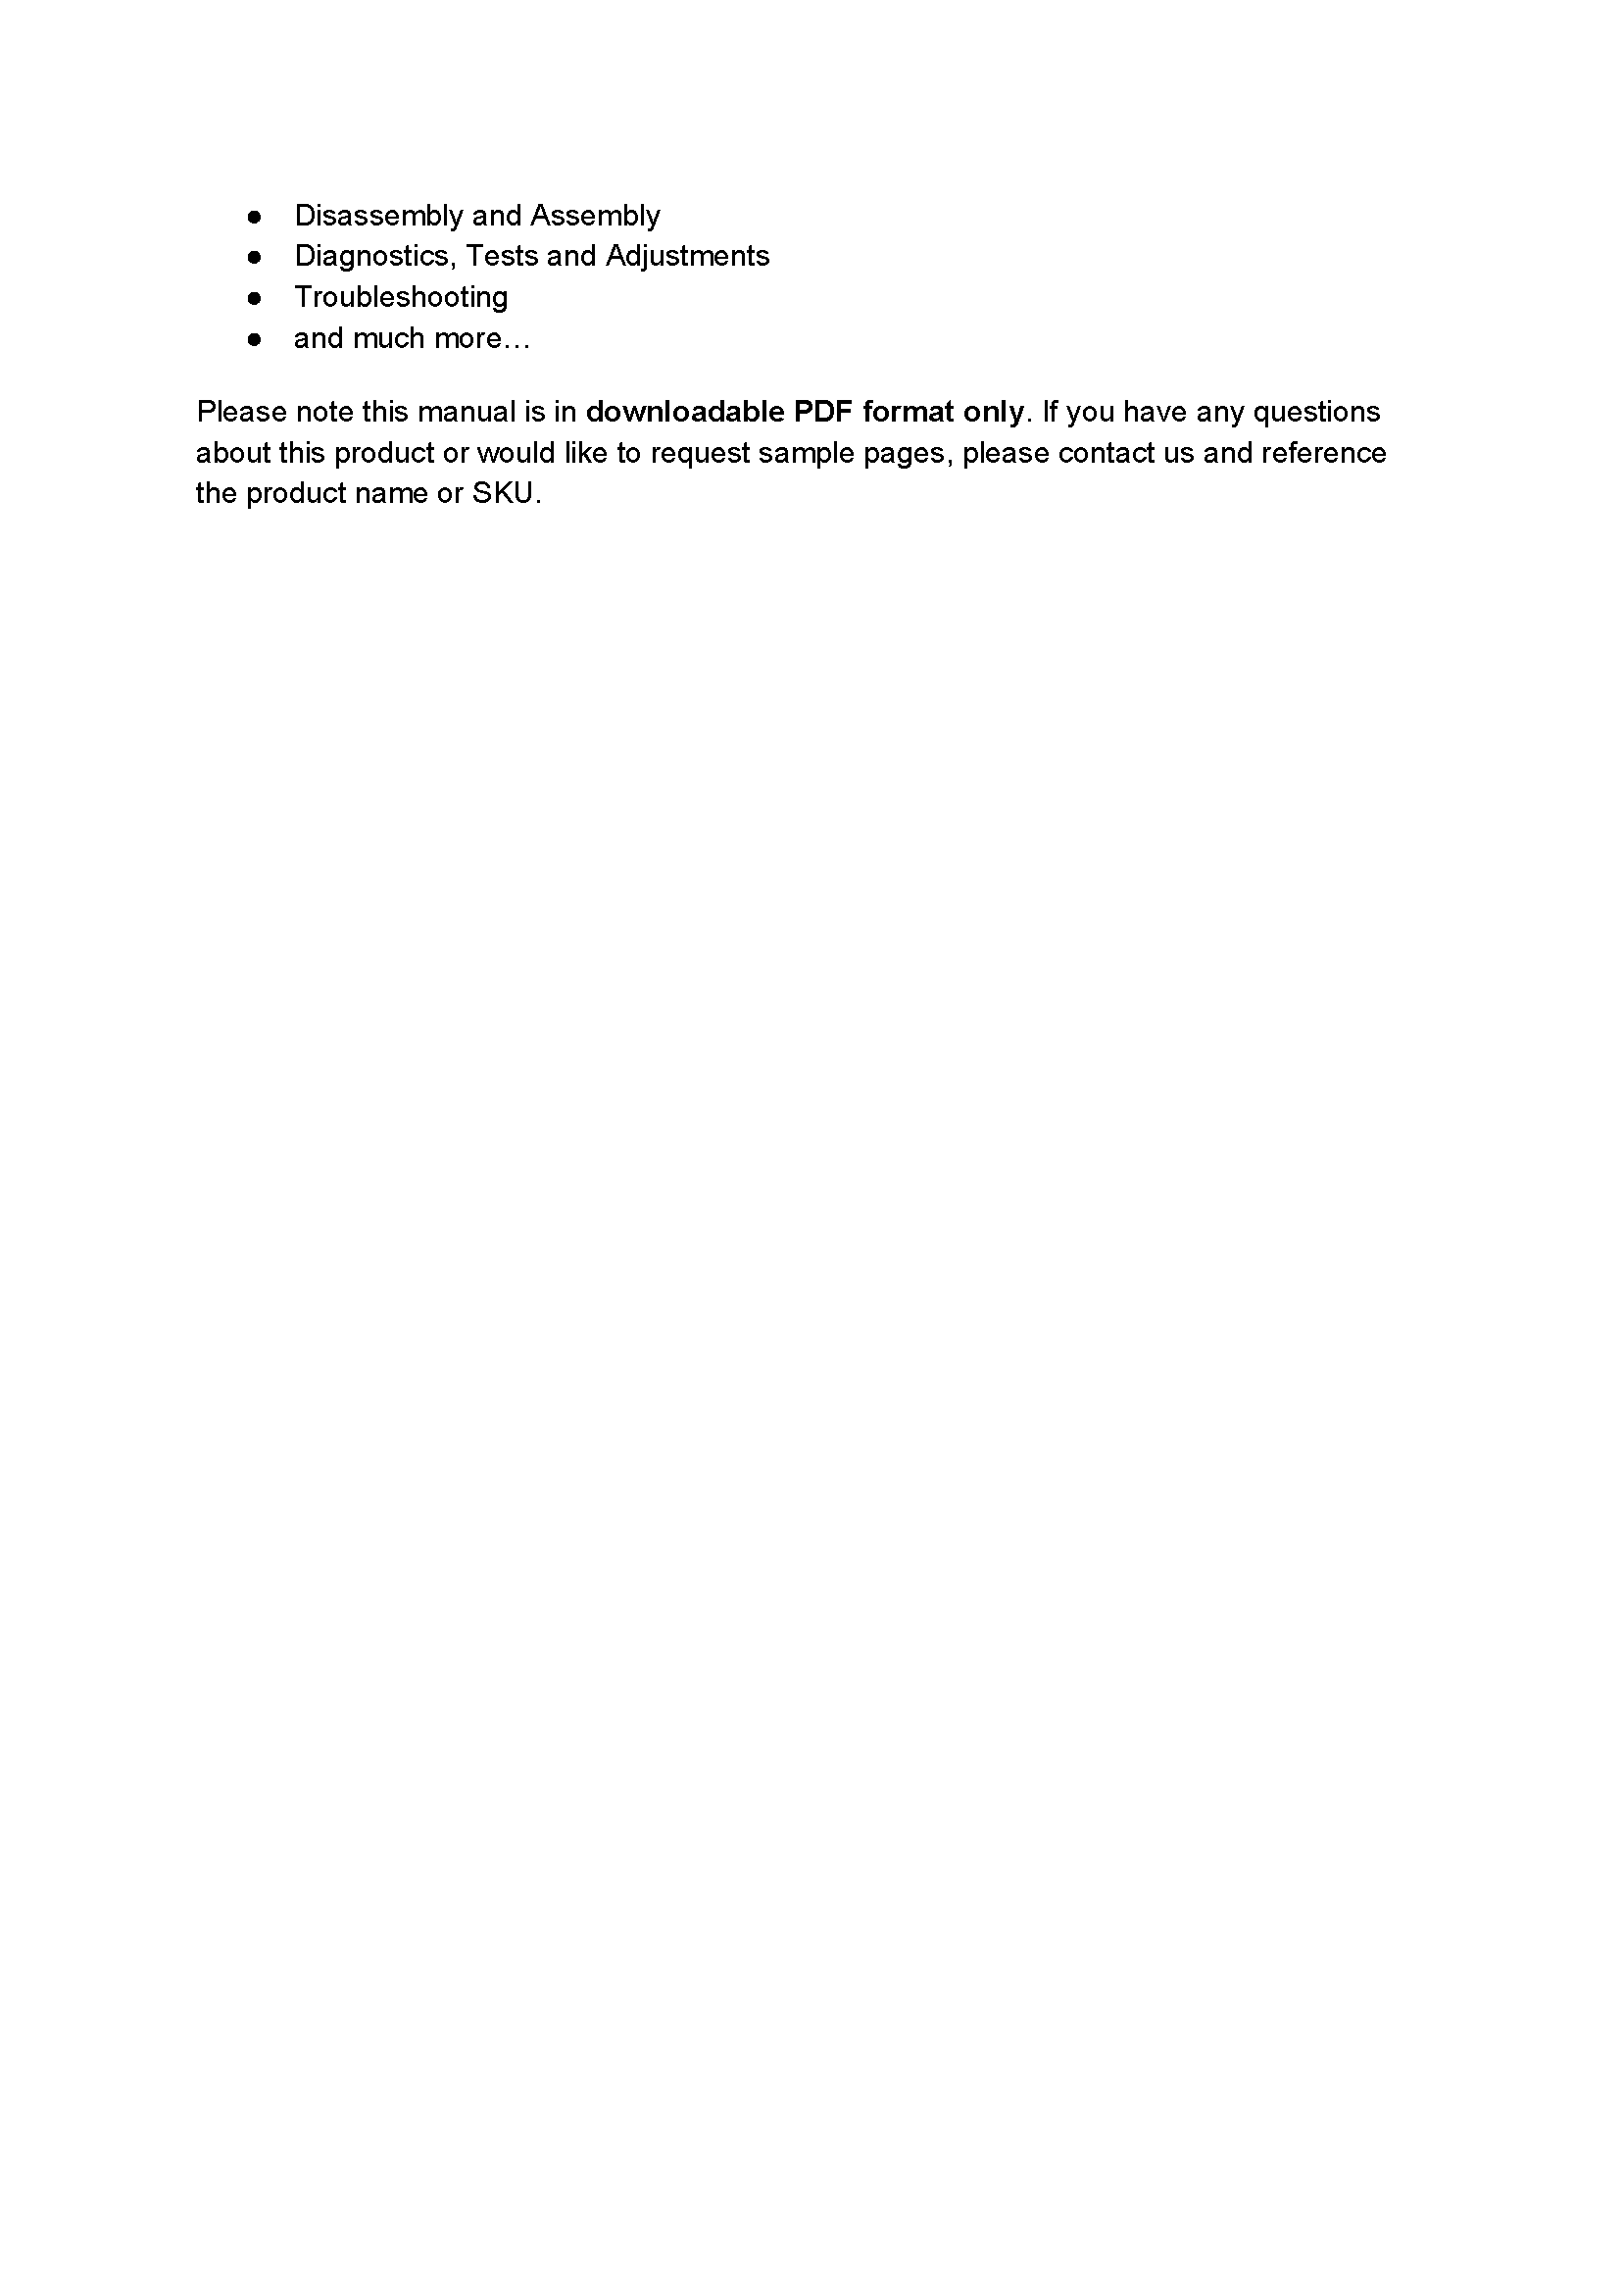 John Deere 2750 manual pdf